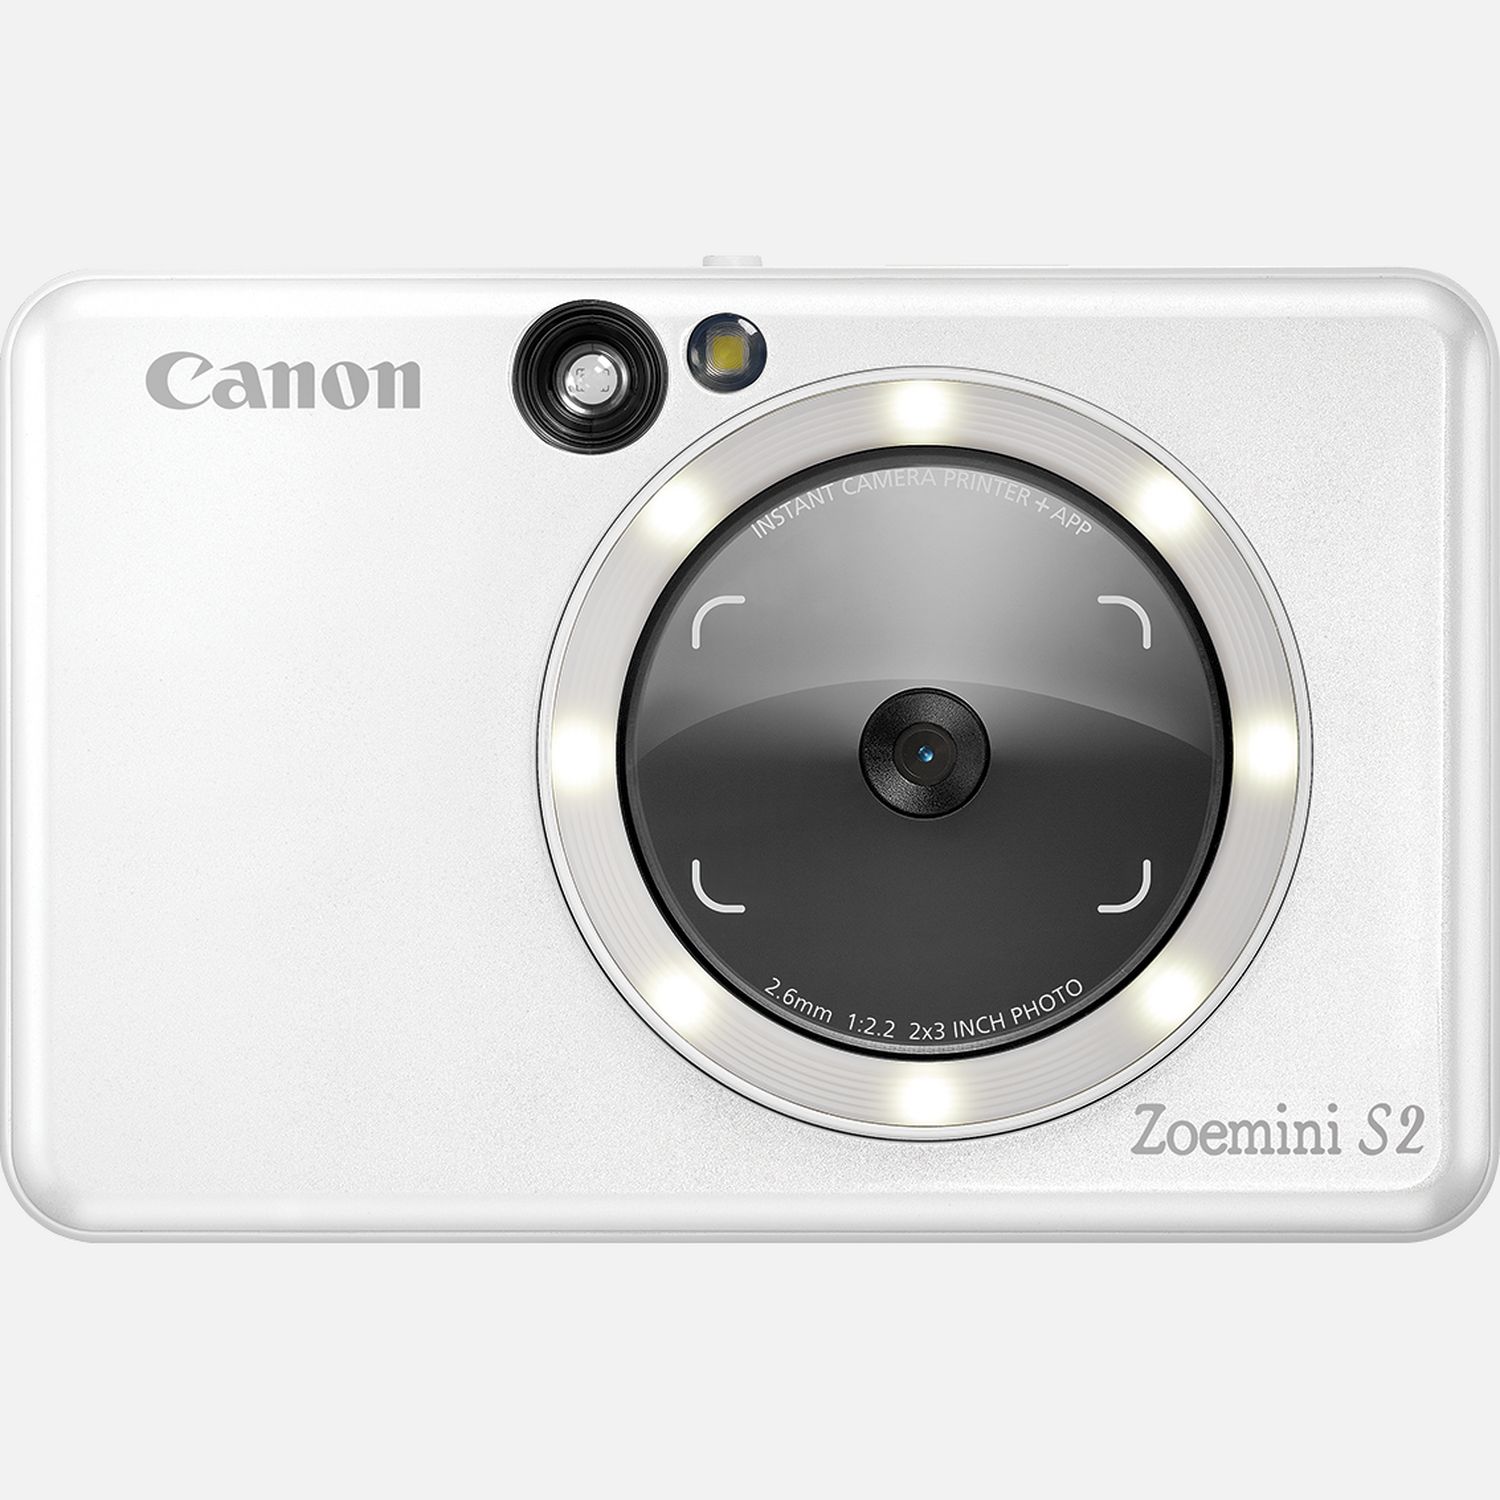 Der Canon Zoemini S2 ist eine Sofortbildkamera mit Mini-Fotodrucker der nchsten Generation, die mit Spiegel, Ringlicht, Fernauslser und Livebildansicht die perfekte Technologie fr Selfie-Liebhaber bietet. Werde kreativ und gestalte deine Fotos ber die Canon Mini Print App auf deinem Smartphone mit Filtern, Emojis und Text. Mit einer Akkuladung druckt der Canon Zoemini S2 bis zu 25 Fotos. Deine Lieblingsbilder kannst du auch auf einer microSD-Karte (nicht im Lieferumfang) speichern und sie spter ausdrucken  praktisch, wenn das Papier knapp wird. Die selbstklebenden Fotos sind schnell gedruckt und ideal, um damit Gegenstnde zu personalisieren. Diese elegante und schlanke Sofortbildkamera mit Mini-Fotodrucker, die in Blaugrn, Perlwei und Rosgold erhltlich ist, ist der ultimative tragbare Begleiter und verfgt ber Effekt- und Rahmentasten fr Filter-Flair und coole Anpassungen.  Vorteile      Mit dieser 2-in-1 Sofortbildkamera mit Mini-Fotodrucker im Taschenformat kannst du sofort fotografieren und drucken          Mit Spiegel und Ringlicht gelingen tolle Schnappschsse, die du auch noch mit Rahmen- und Effekten-Tasten verschnern kannst  deine Favoriten hierfr kannst du ganz einfach mit der Canon Mini Print App festlegen          Mit Bluetooth und der Canon Mini Print App kannst du direkt von deinem Handy auf dem Canon Zoemini S2 drucken oder die Livebildansicht verwenden, um deine Bilder mit coolen Effekten zu versehen oder zu einer Collage zusammenzustellen.          Du setzt einfach einen 10-er Pack Zink Fotopapier mit Kleberckseite ein und kannst deine Lieblingsbilder ausdrucken und dann berall, wo du willst, hinkleben.          Das schlanke und schmale Gert ist in den Farben Blaugrn, Perlwei und Rosgold erhltlich  das ultimative tragbare Accessoire          Die Zink-Drucktechnologie erzeugt wisch-, rei- und wasserfeste Drucke  separate Tintenpatronen werden nicht bentigt          Und zum Speichern der Aufnahmen kannst du eine microSD Karte (optional als Zubehr erhltlich) in den entsprechenden Slot des Zoemini S2 einsetzen          Lieferumfang       Canon Zoemini S2 Sofortbildkamera und Mini-Fotodrucker, Perlwei         USB-Kabel         Kurzanleitung und andere Dokumentationen         Canon Zink Fotopapier (10 Blatt) + 1 SMARTSHEET         Handschlaufe              Technische Daten              10 Blatt Papierkapazitt - Ganz ohne Tinte Canon Zink Fotopapier im Format 5 x 7,6 cm                Schick und leicht  188 g Modell in Blaugrn, Wei und Rosgold                Bluetooth-Verbindung                Fernauslsung und Livebildansicht  Mit der Canon Mini Print App                Smartphone-kompatibel  iOS und Android                314 x 600 dpi Auflsung                8 Megapixel Kamera                Untersttzung fr micoSD-Speicherkarten (die Speicherkarte ist optional als Zubehr erhltlich)          Alle technischen Daten zeigen